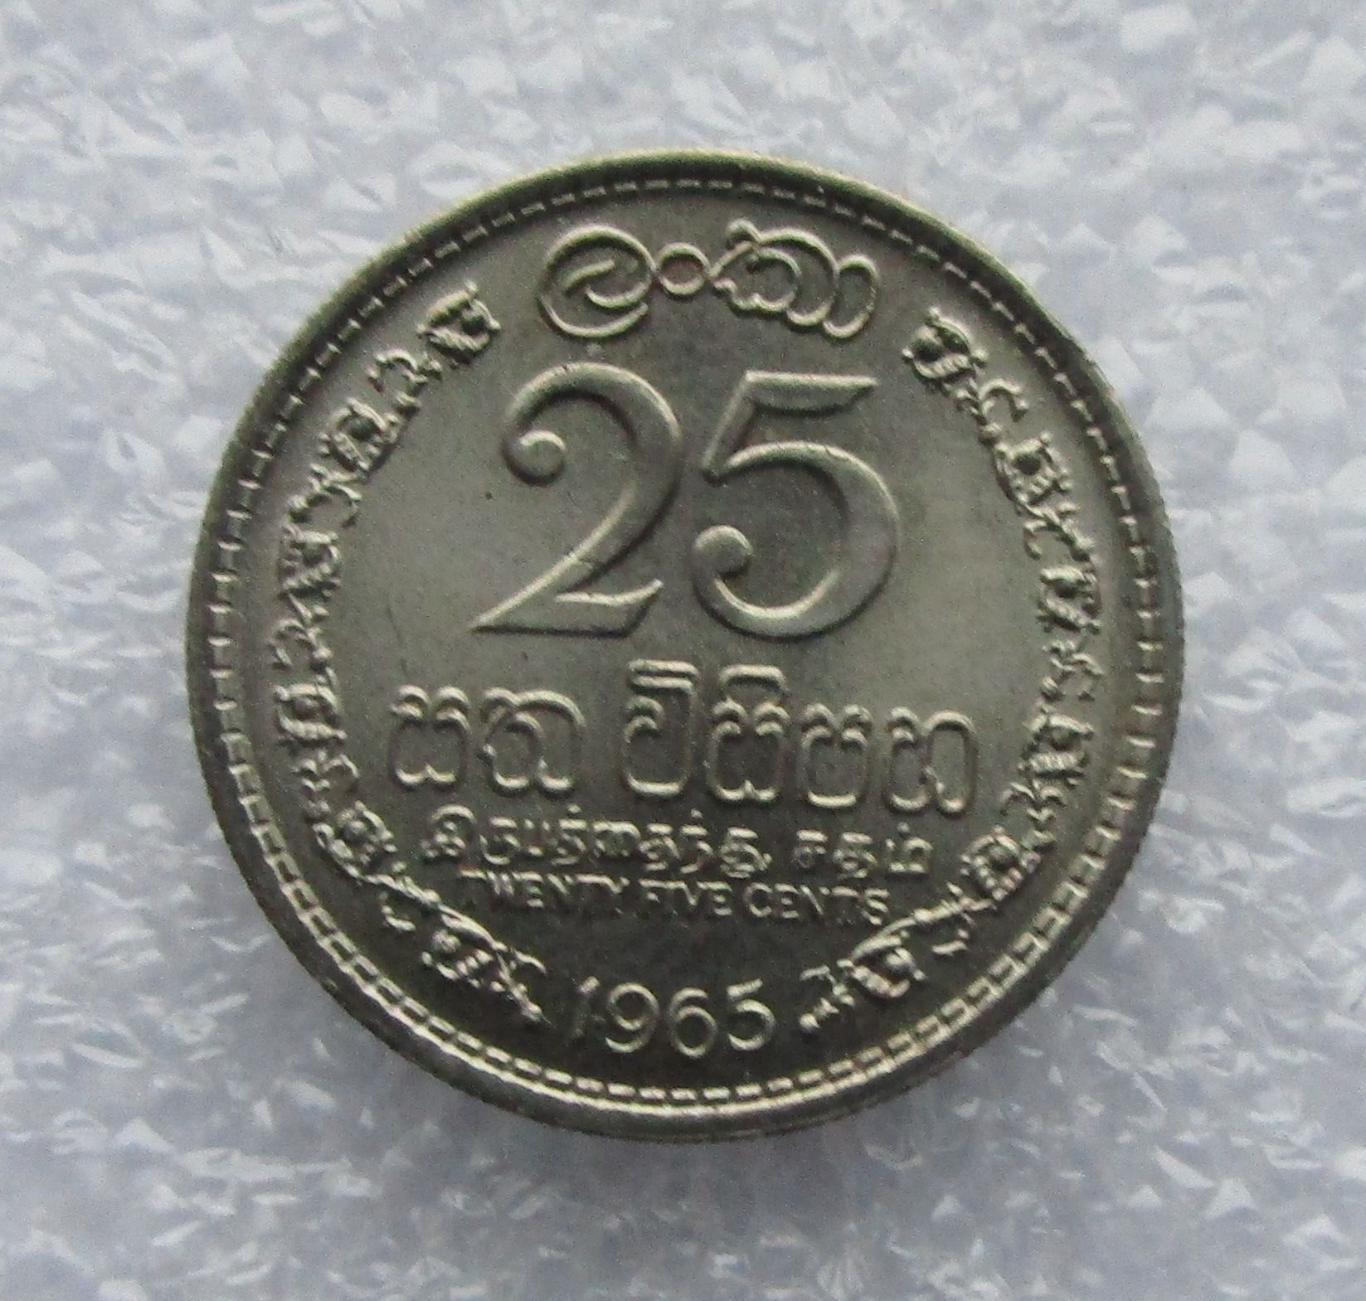 Цейлон, 25 центов - 1965. UNC. Штемпельный блеск.